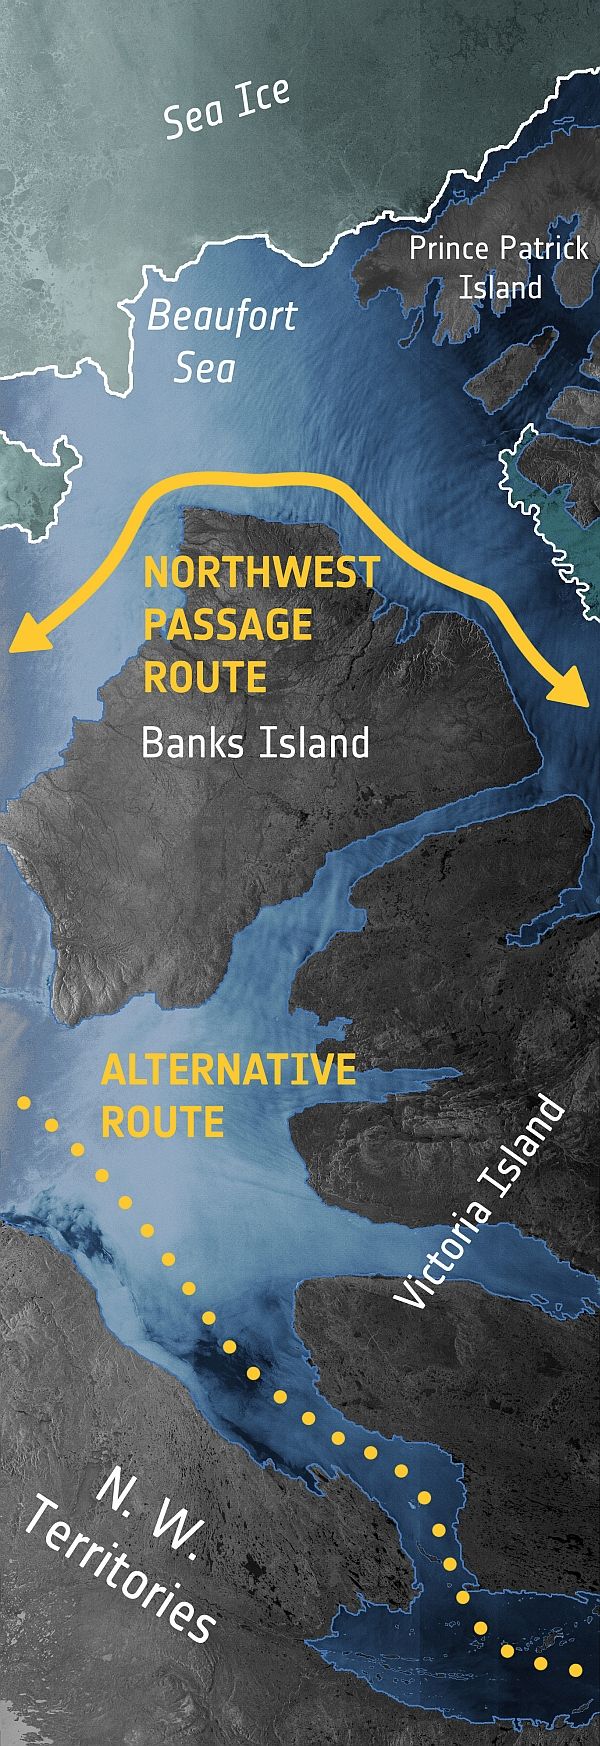 Северо-Западный проход и альтернативный маршрут.